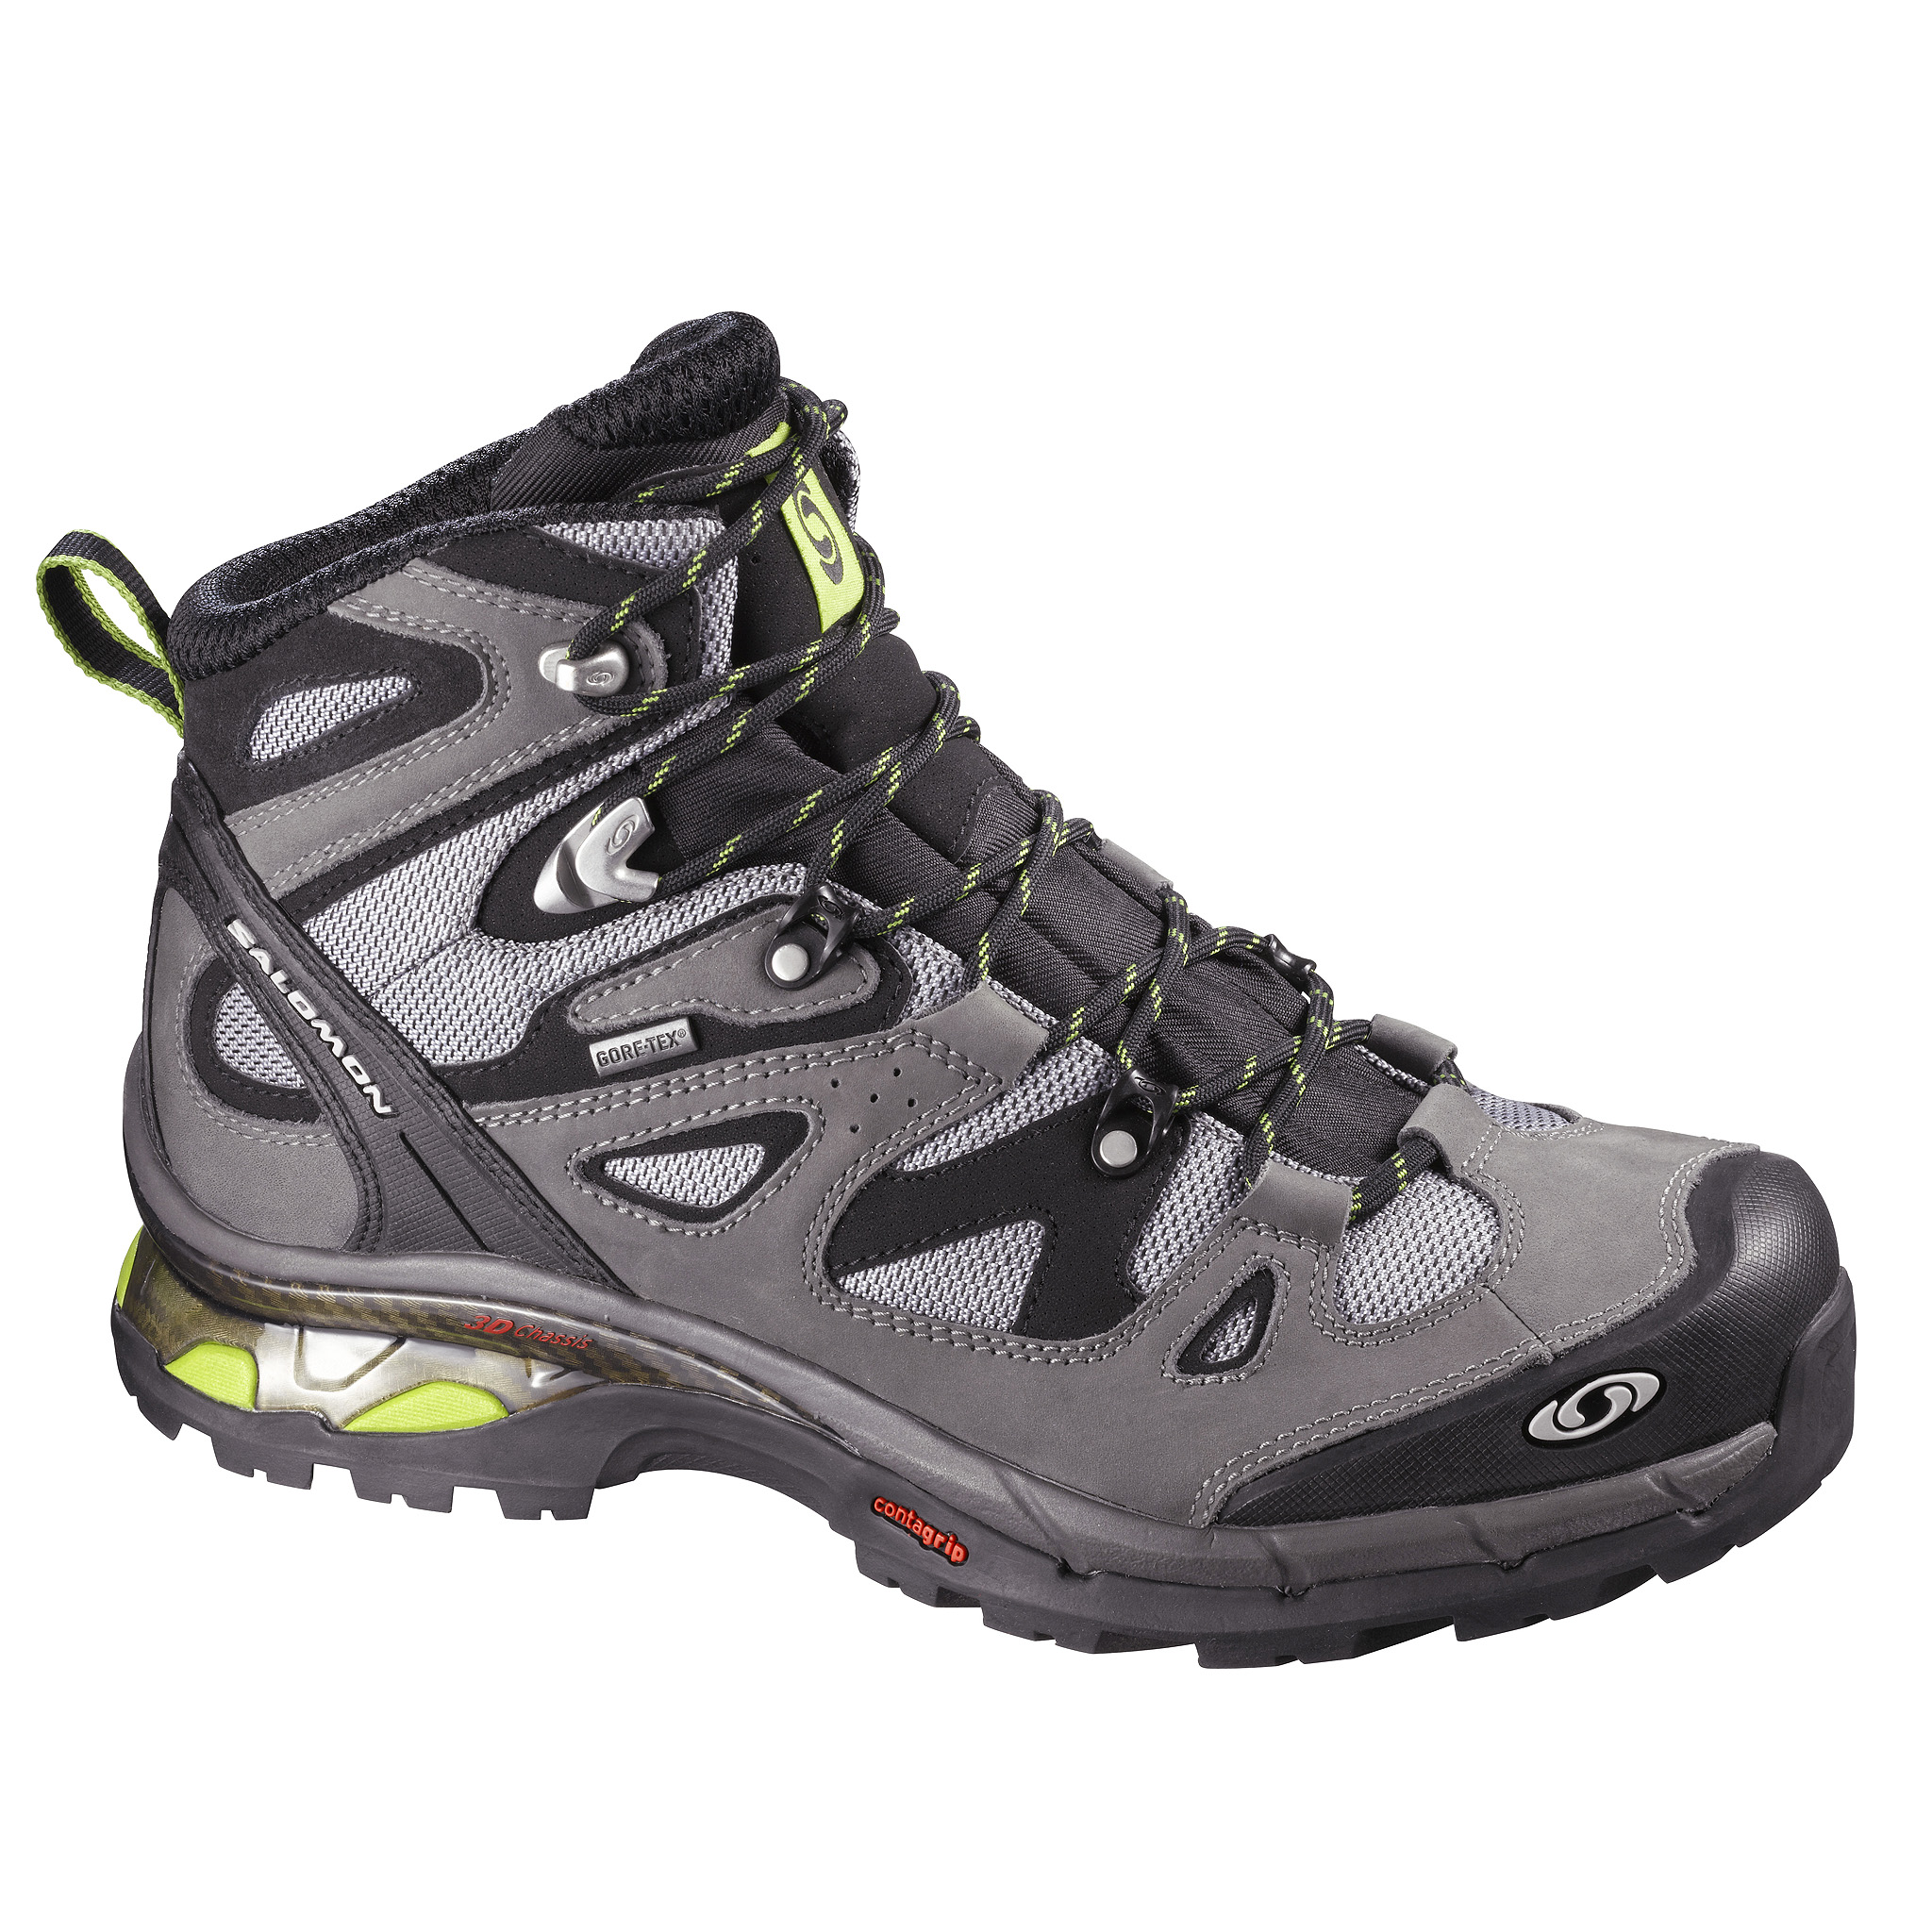  Outdoor  Trekking Shoes,Waterproof Boots, Trekking Shoes, branded Trekking Shoes, Trekking Shoes India,Comet 3D GTX